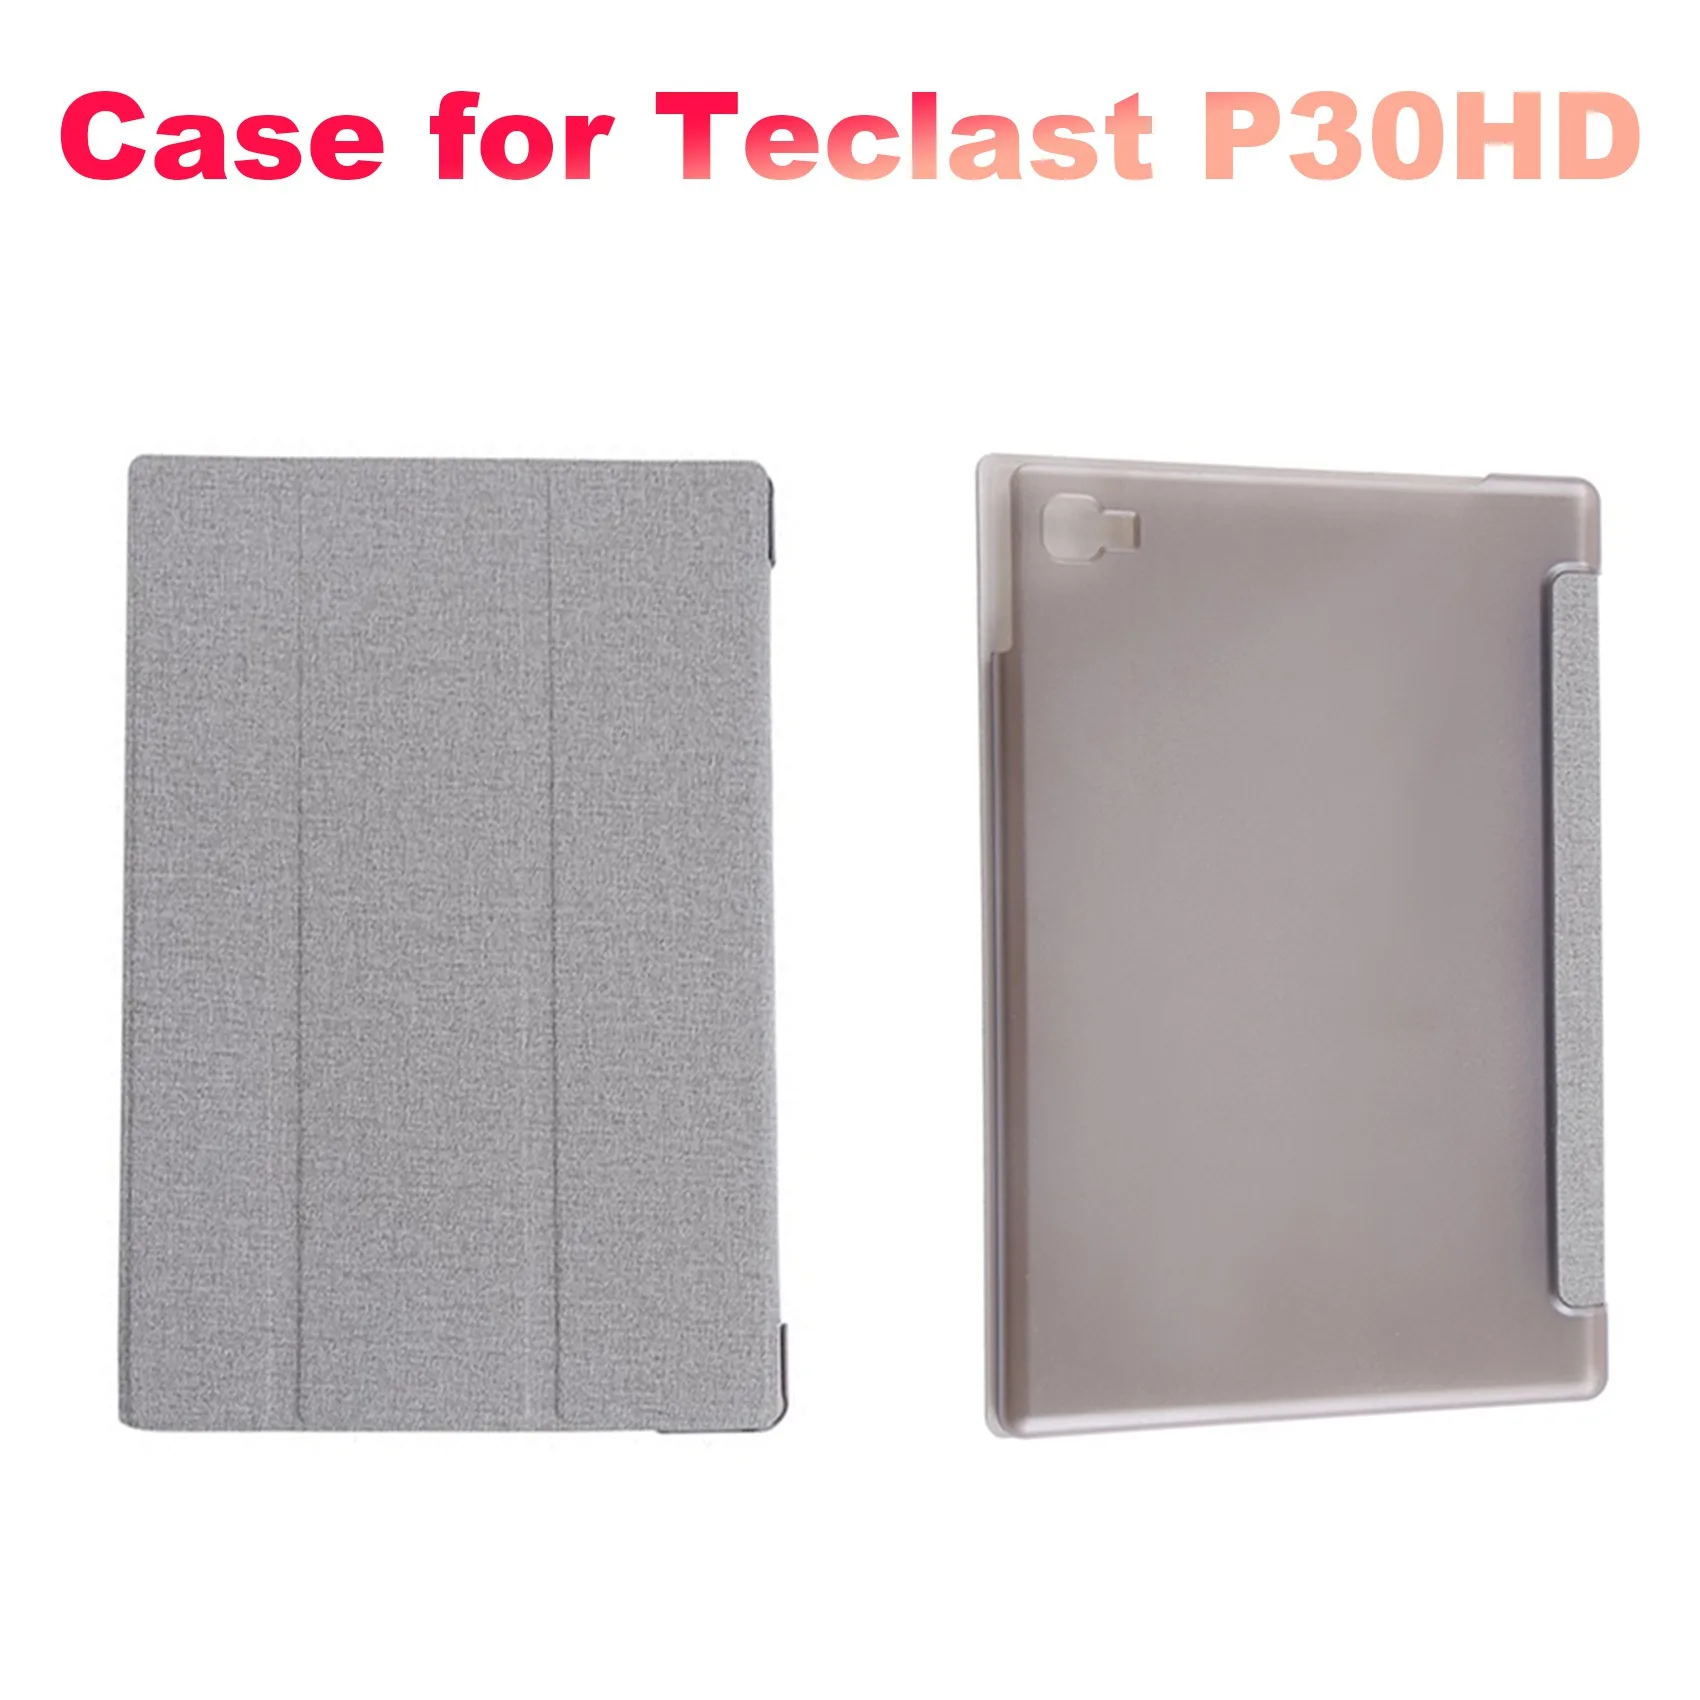 

Искусственная кожа для Teclast P30HD P20HD M40 10,1-дюймовый планшетов, планшетов Teclast P30HD, защитный чехол-подставка (A)